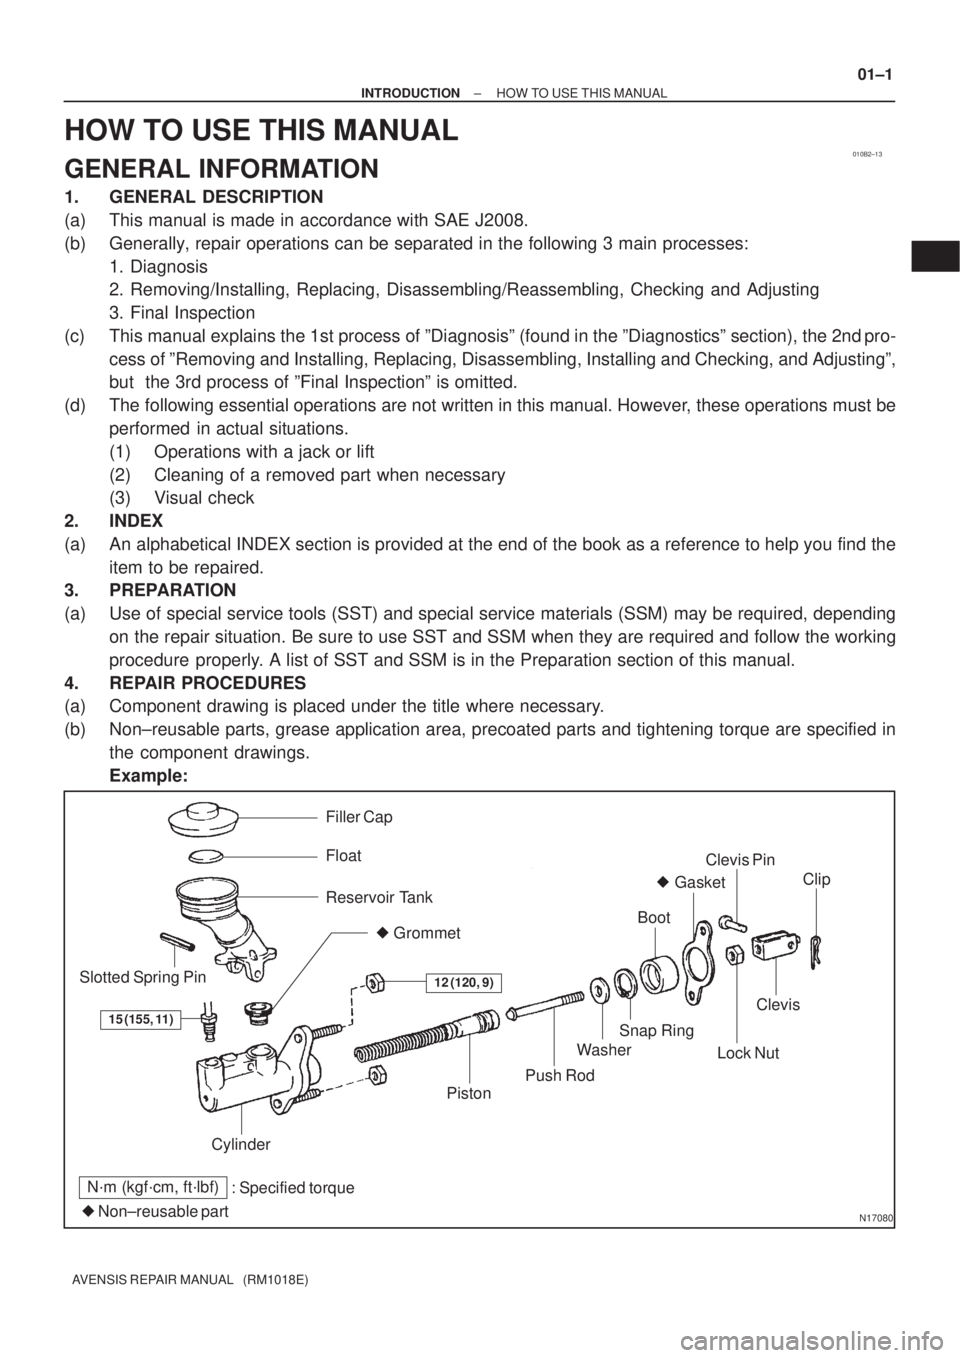 TOYOTA AVENSIS 2005  Service Repair Manual 010B2±13
N17080
Filler Cap
Float
Reservoir Tank
 Grommet
Clip
Slotted Spring Pin
: Specified torque
 Non±reusable partCylinder
Piston
Push Rod
Washer
Snap Ring
Boot
 Gasket
Lock Nut
Clevis Pin
Cl